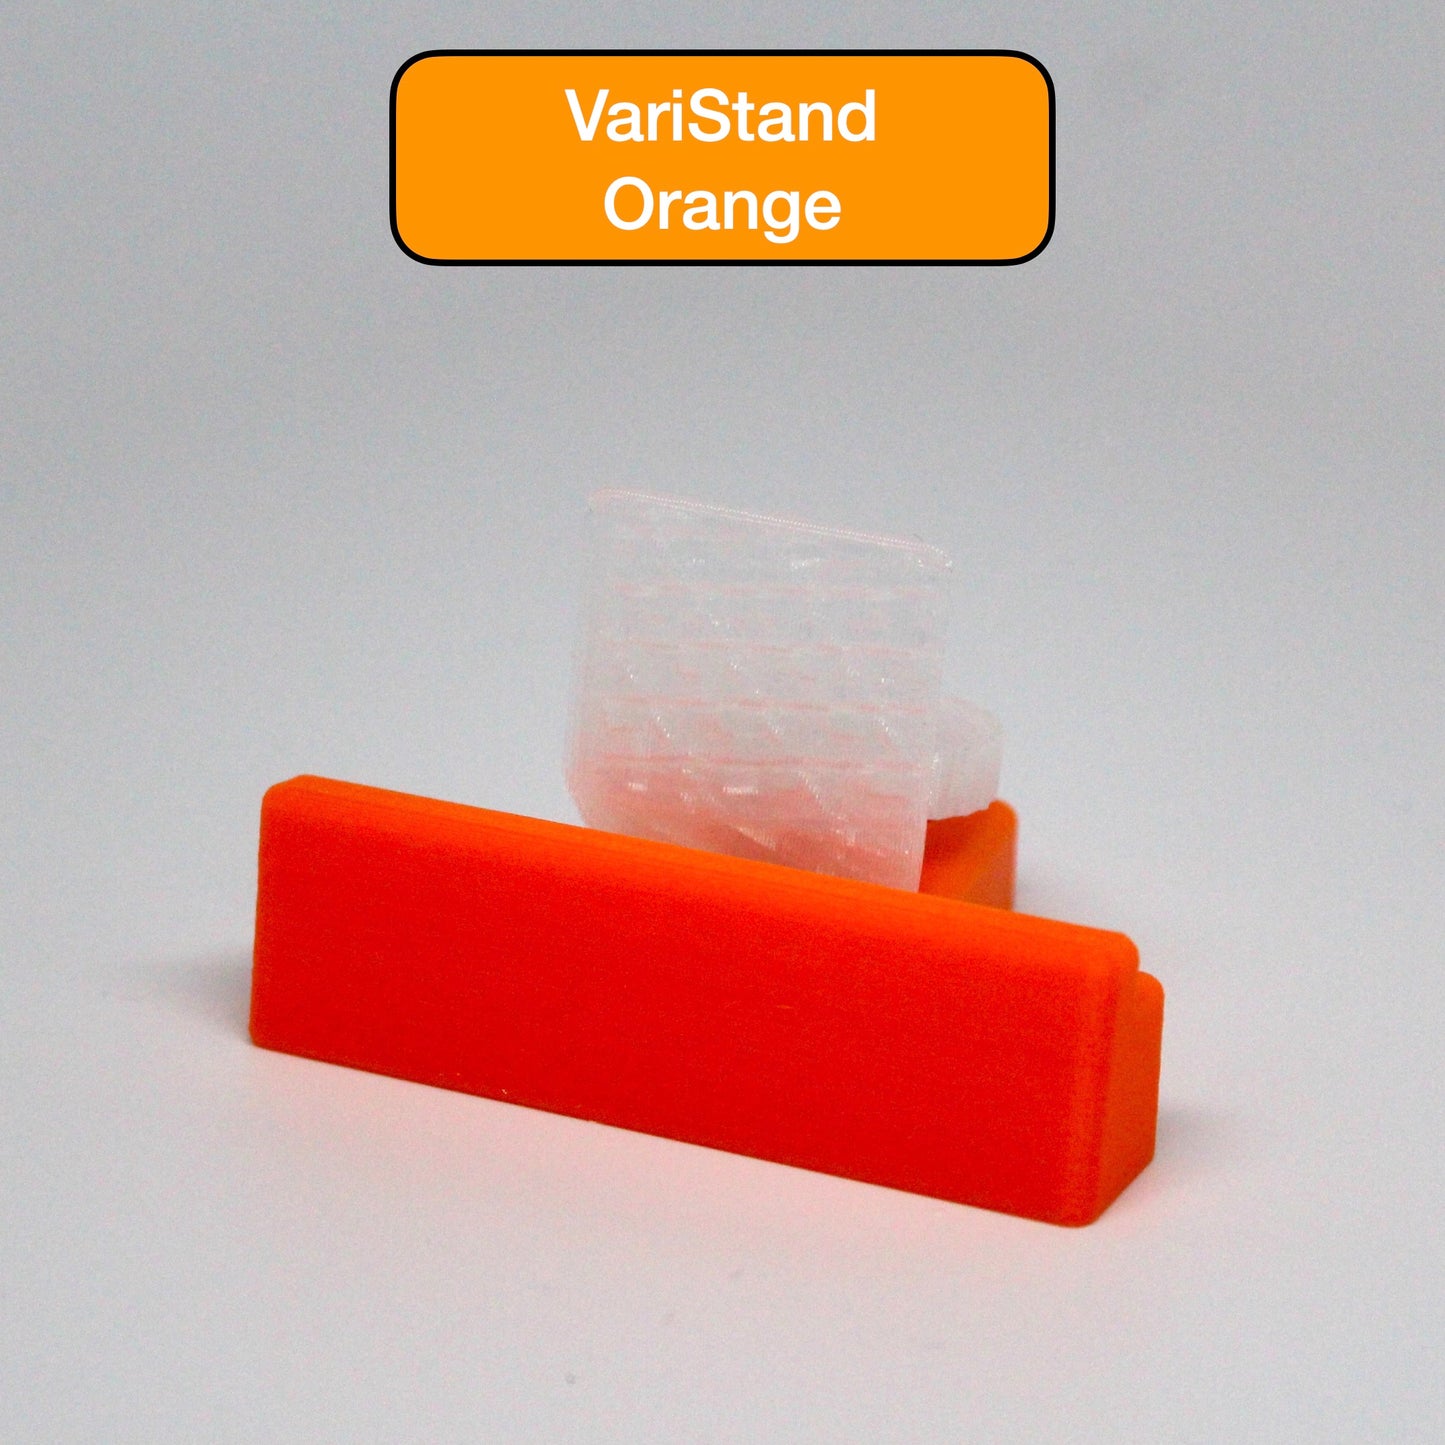 The Adjustable VariStand - Orange